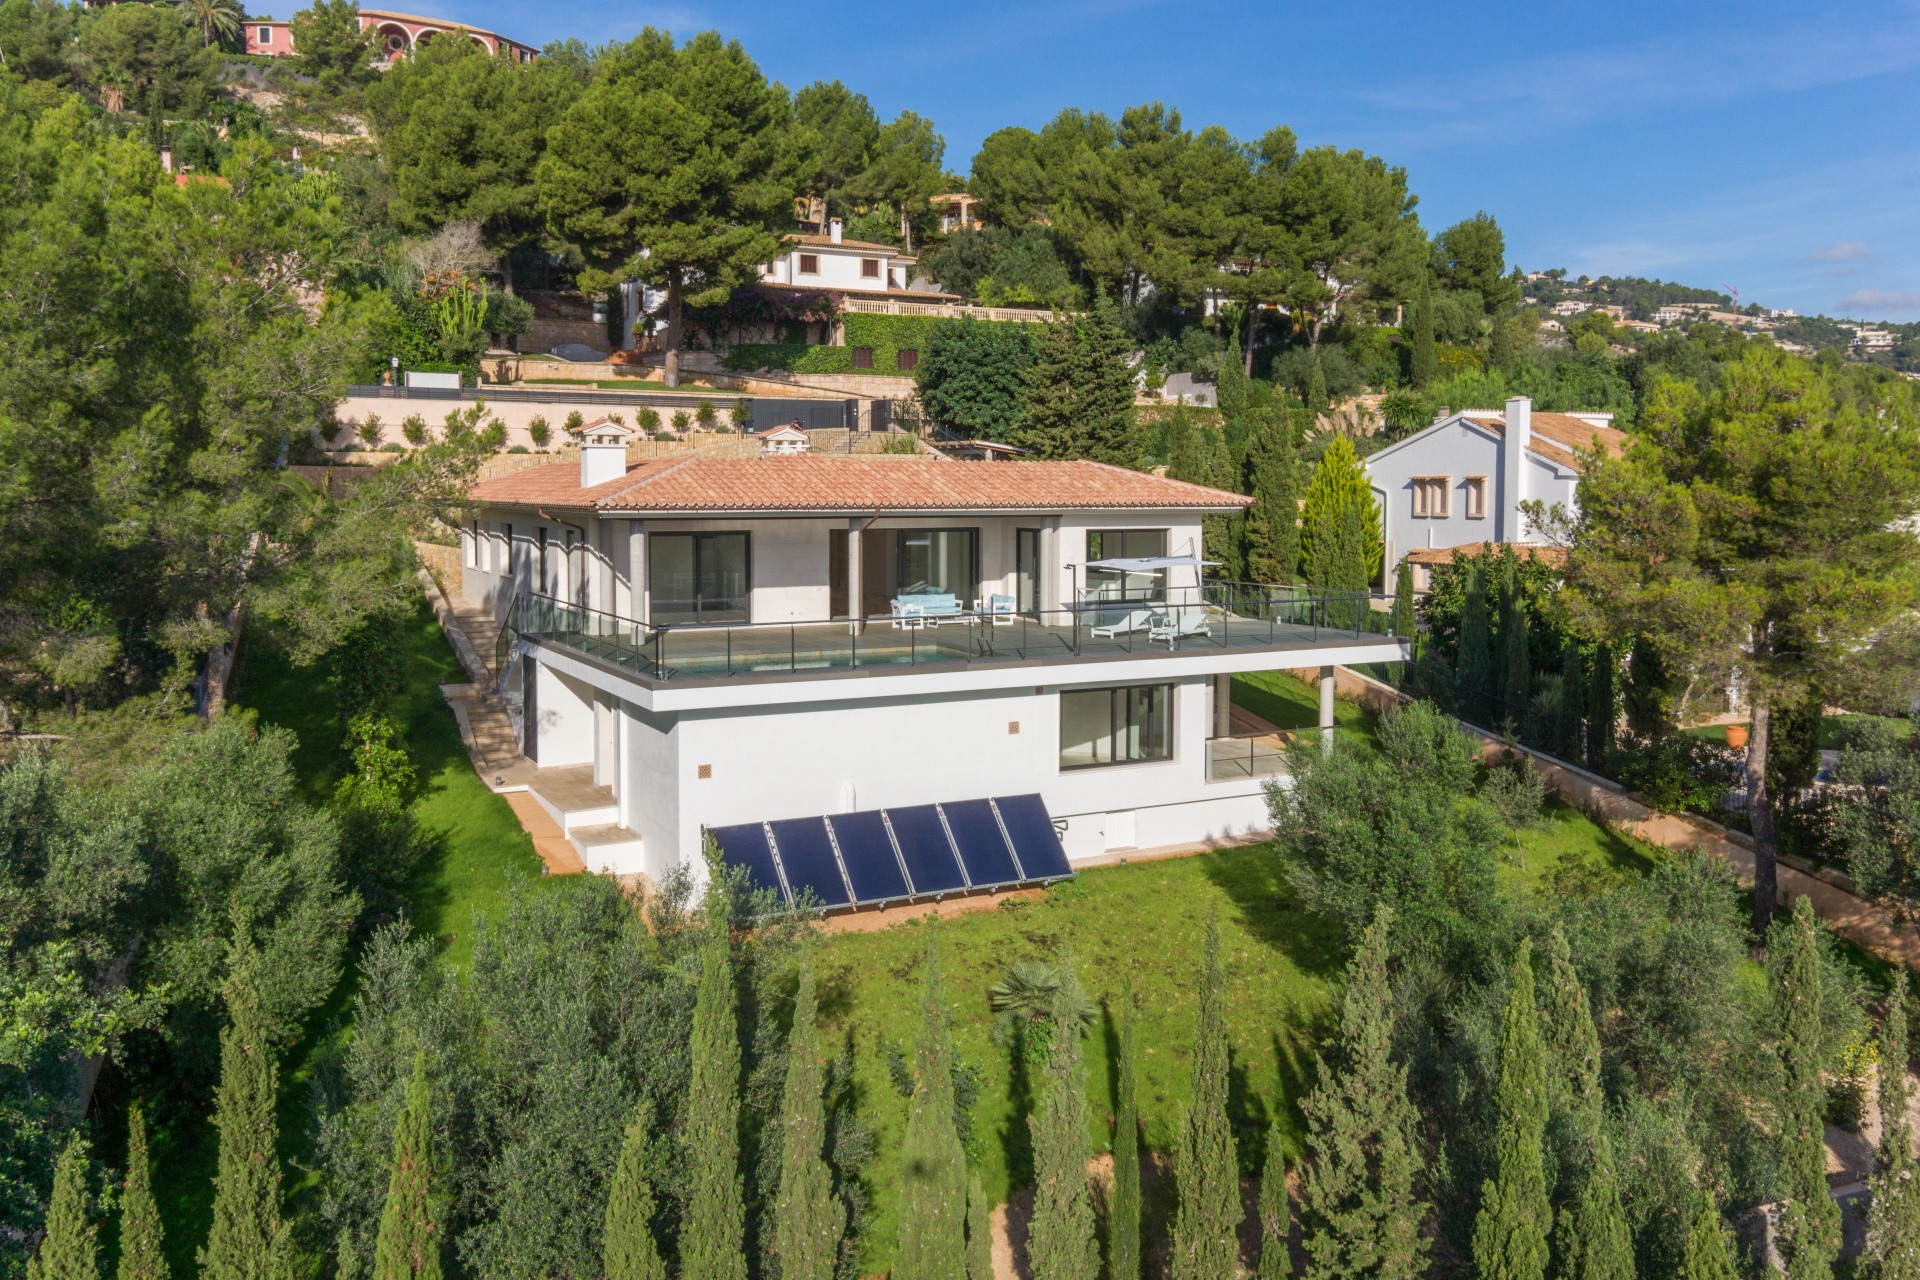 A vendre, Palma, Majorque, Villa de style contemporain surplombant la ville de Palma avec vue mer